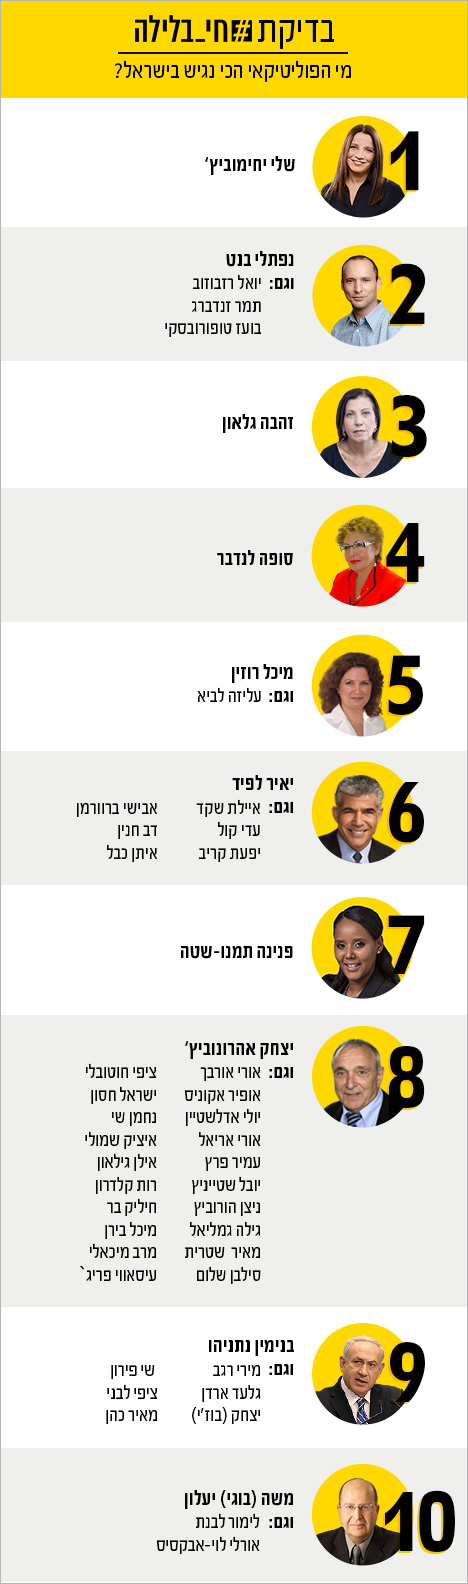 מי הפוליטיקאי הכי נגיש בישראל?